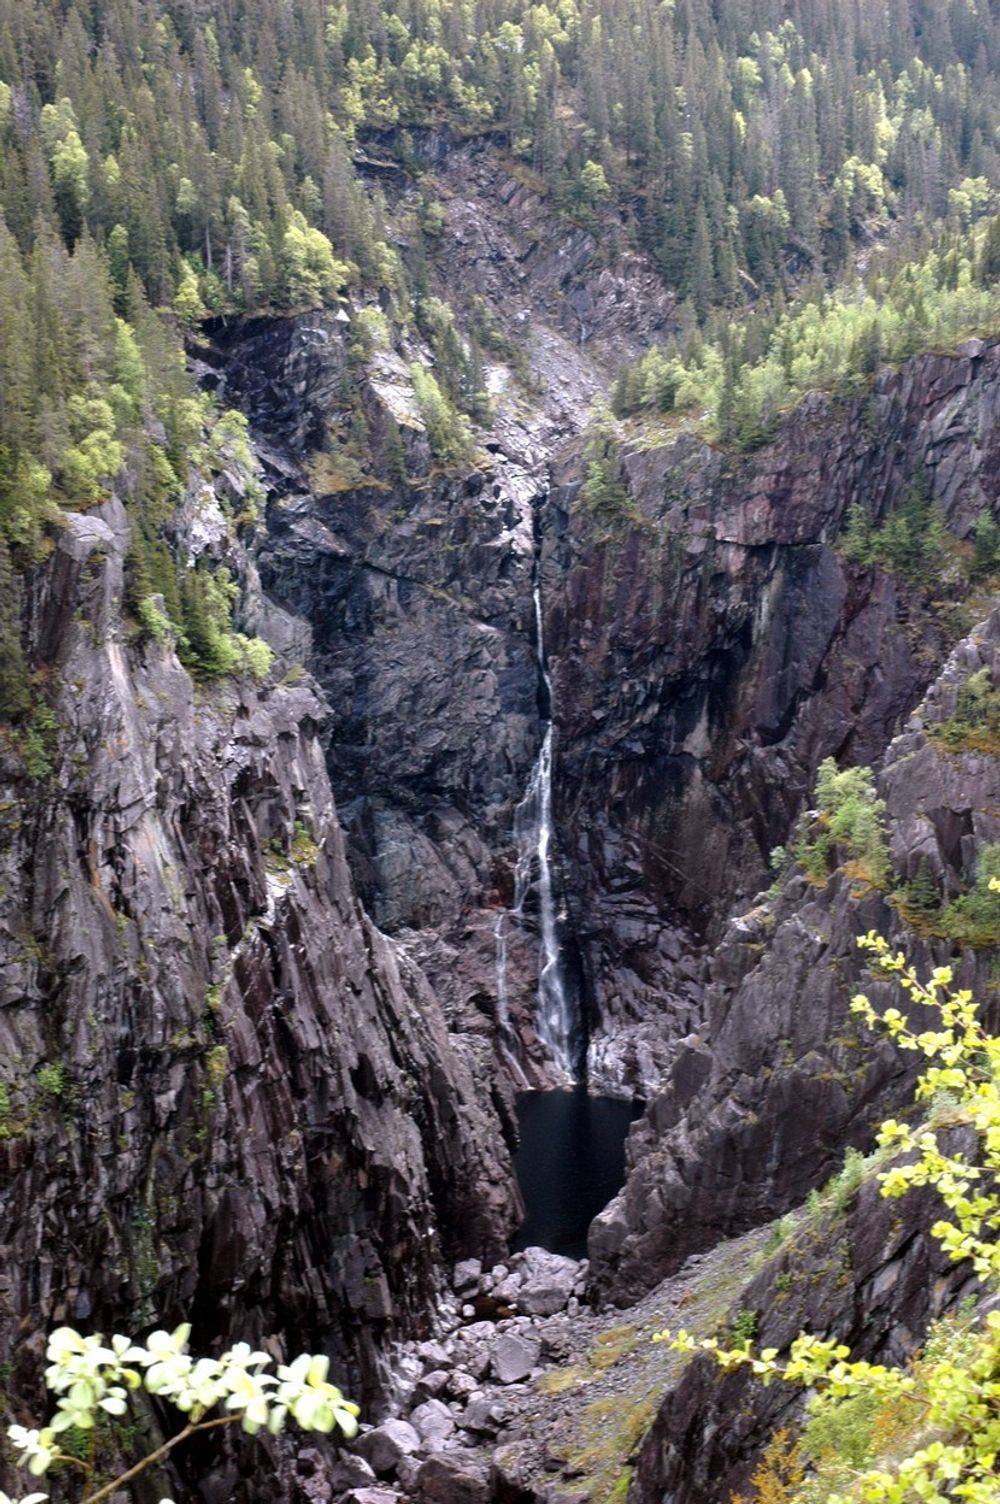 LITE TILBAKE: Den en gang så mektige Rjukanfossen er edusert til en liten bekk. Antall ansatte i Hydro på Rjukan har vært utsatt for samme reduksjon